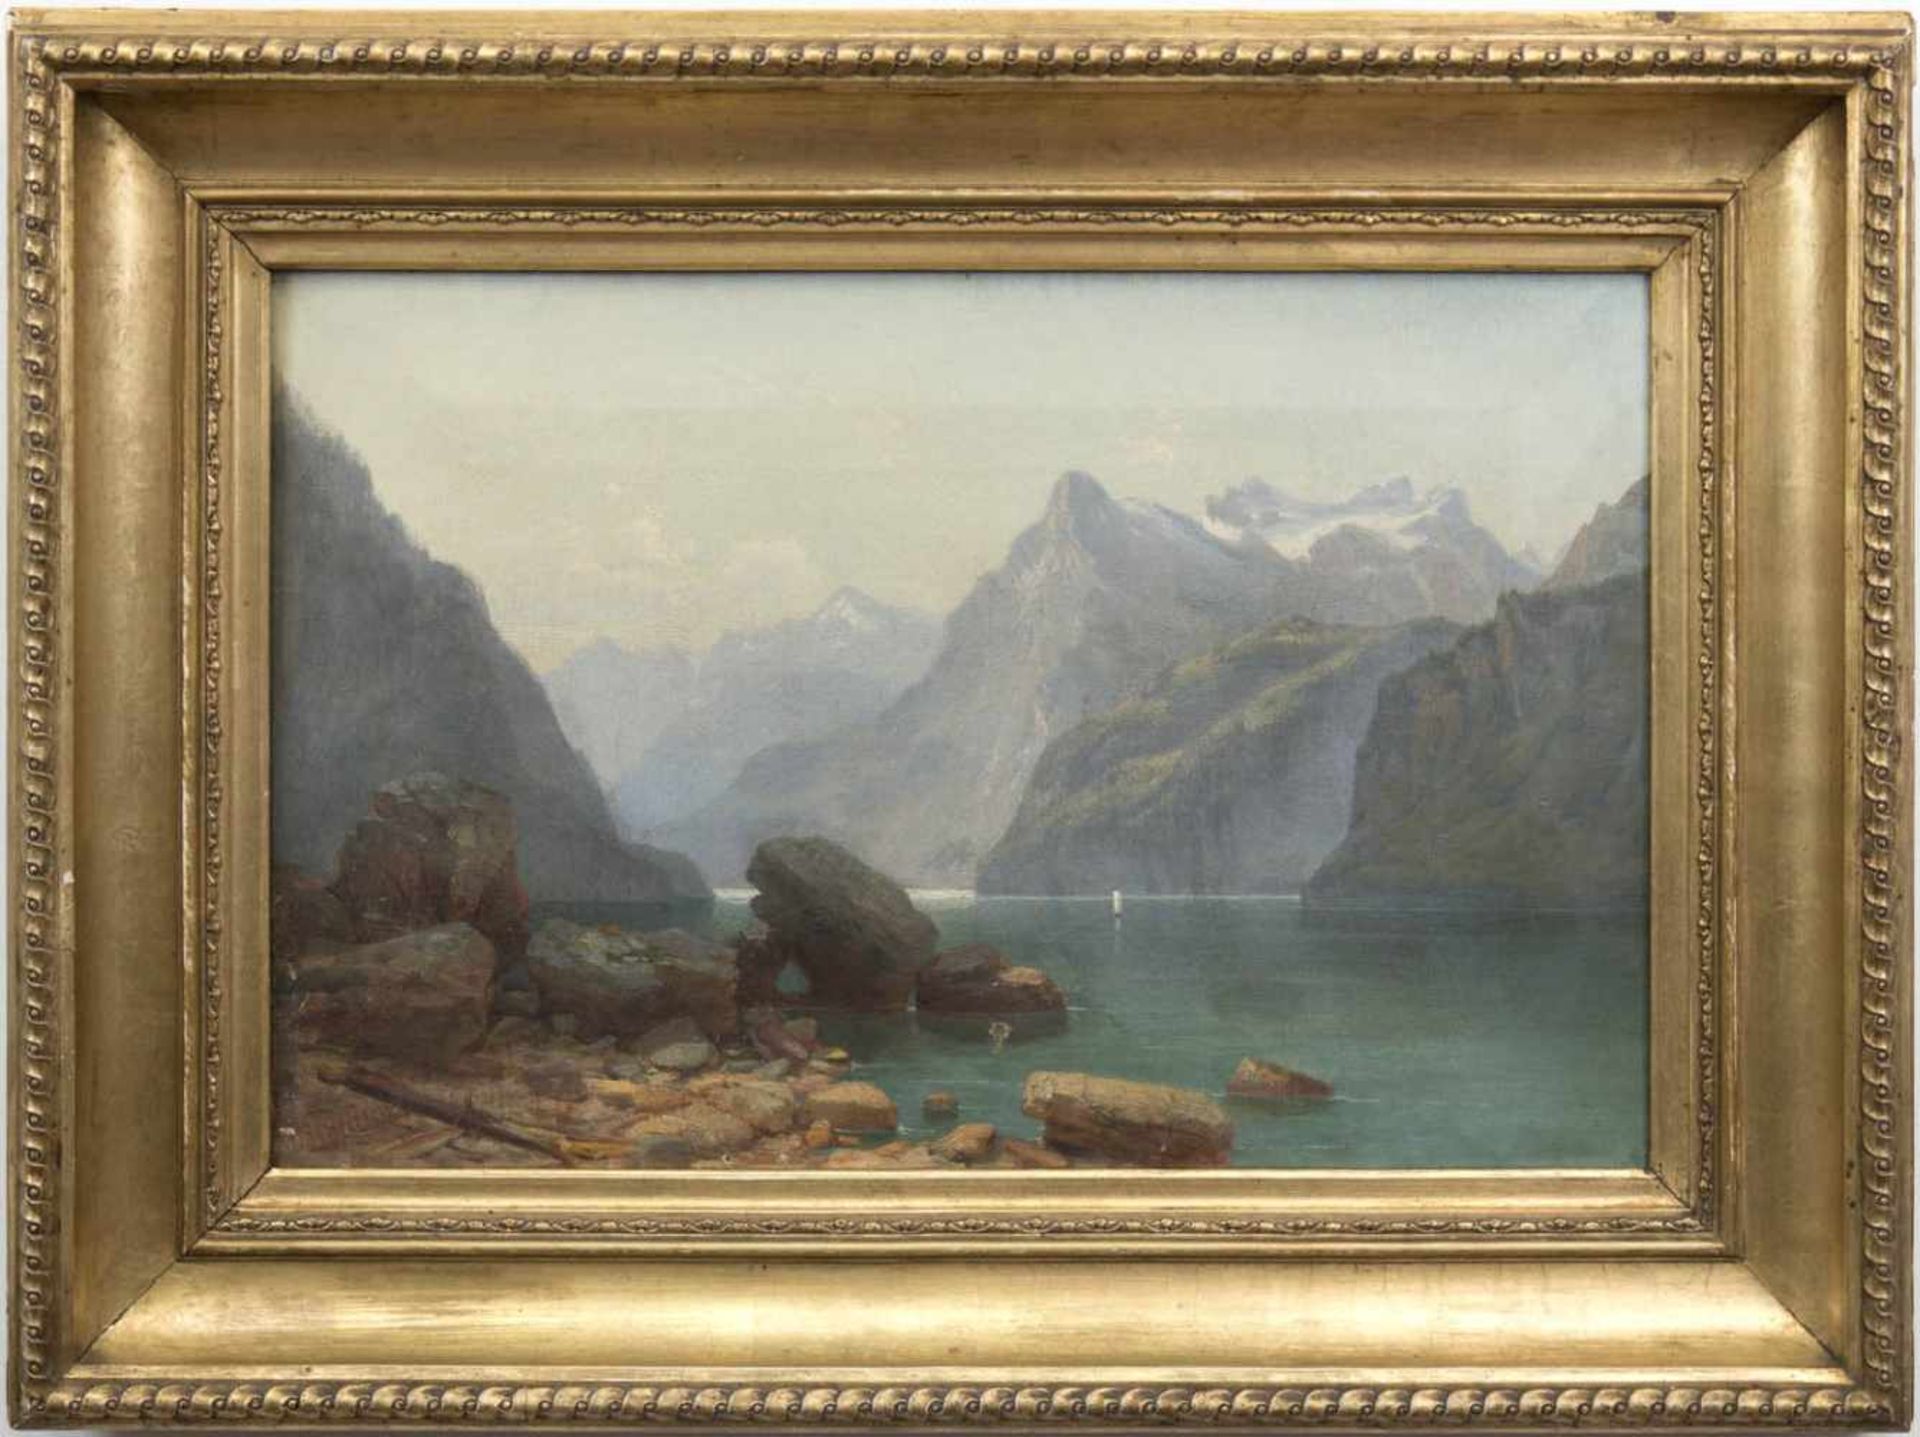 Landschaftsmaler des 19. Jh. "Blick auf den Königssee", Öl/Lw., unsign., kl. Farbabpl., 34x49 cm,